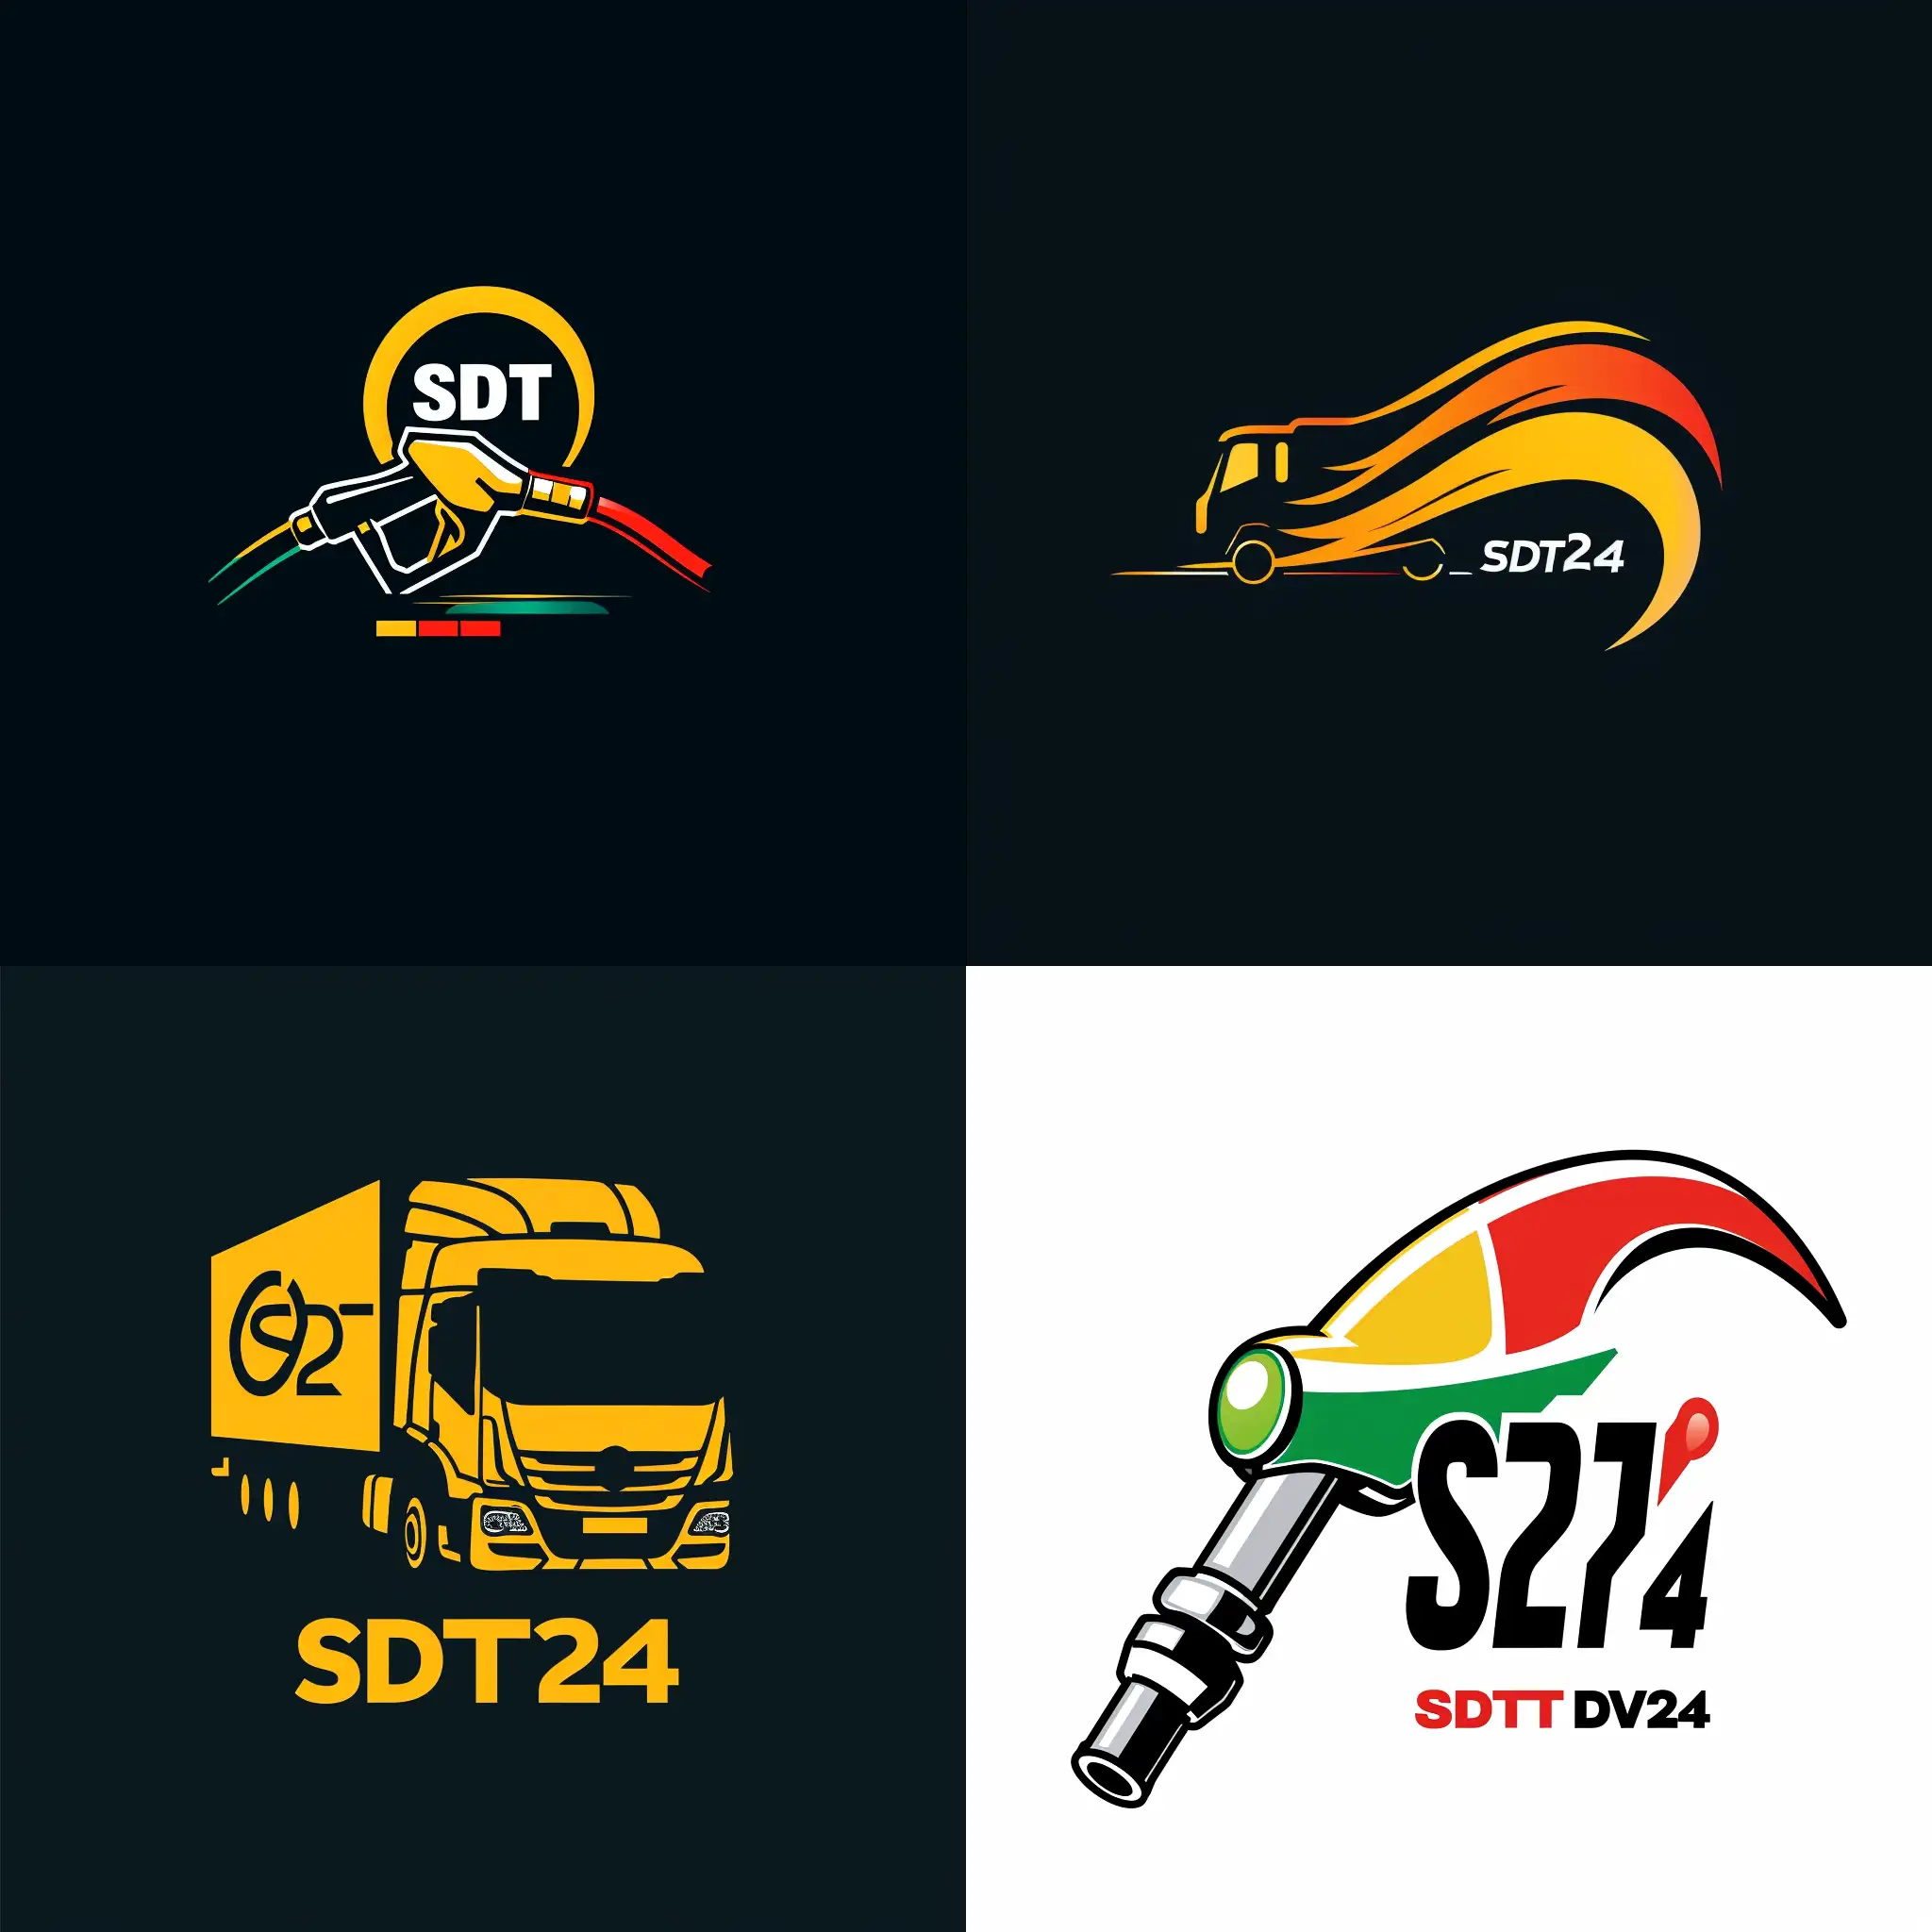 придумай логотип компании под названием SDT24, которая занимается доставкой топлива. логотип должен передавать смысл срочной доставки дизельного топлива, служба работае круглосуточно 24/7, и что доставка скоростная